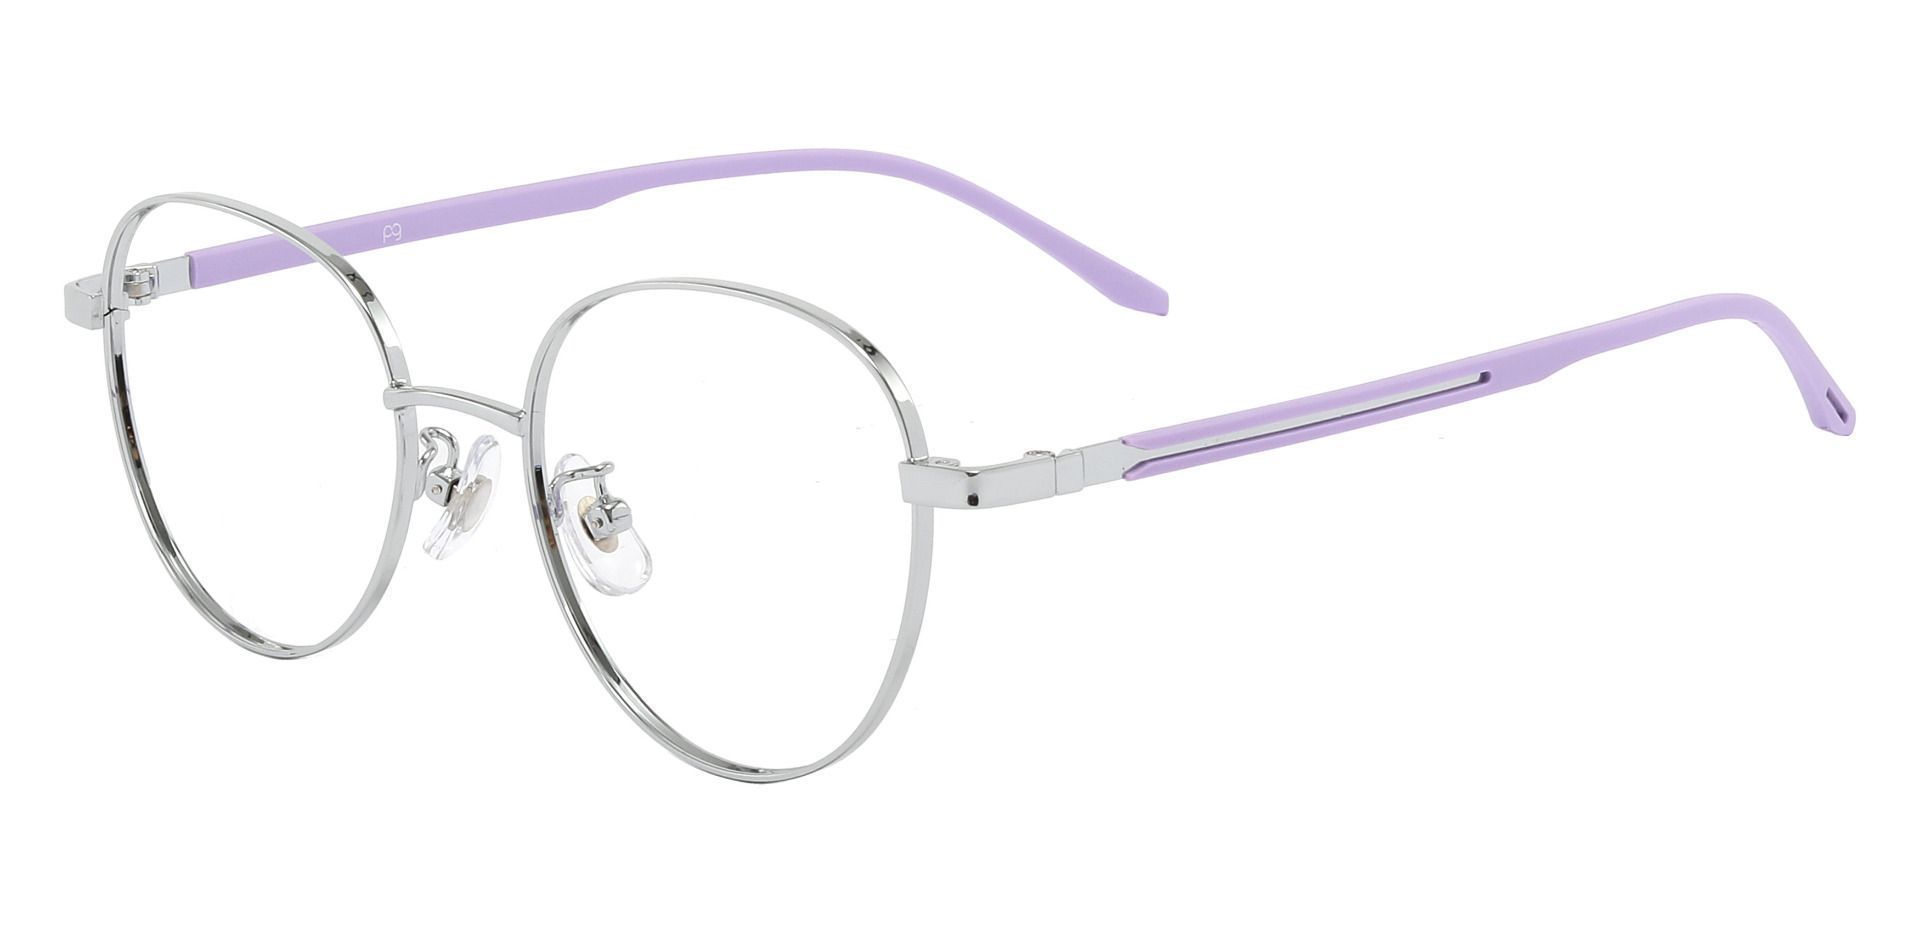 Meredith Oval Prescription Glasses - Silver